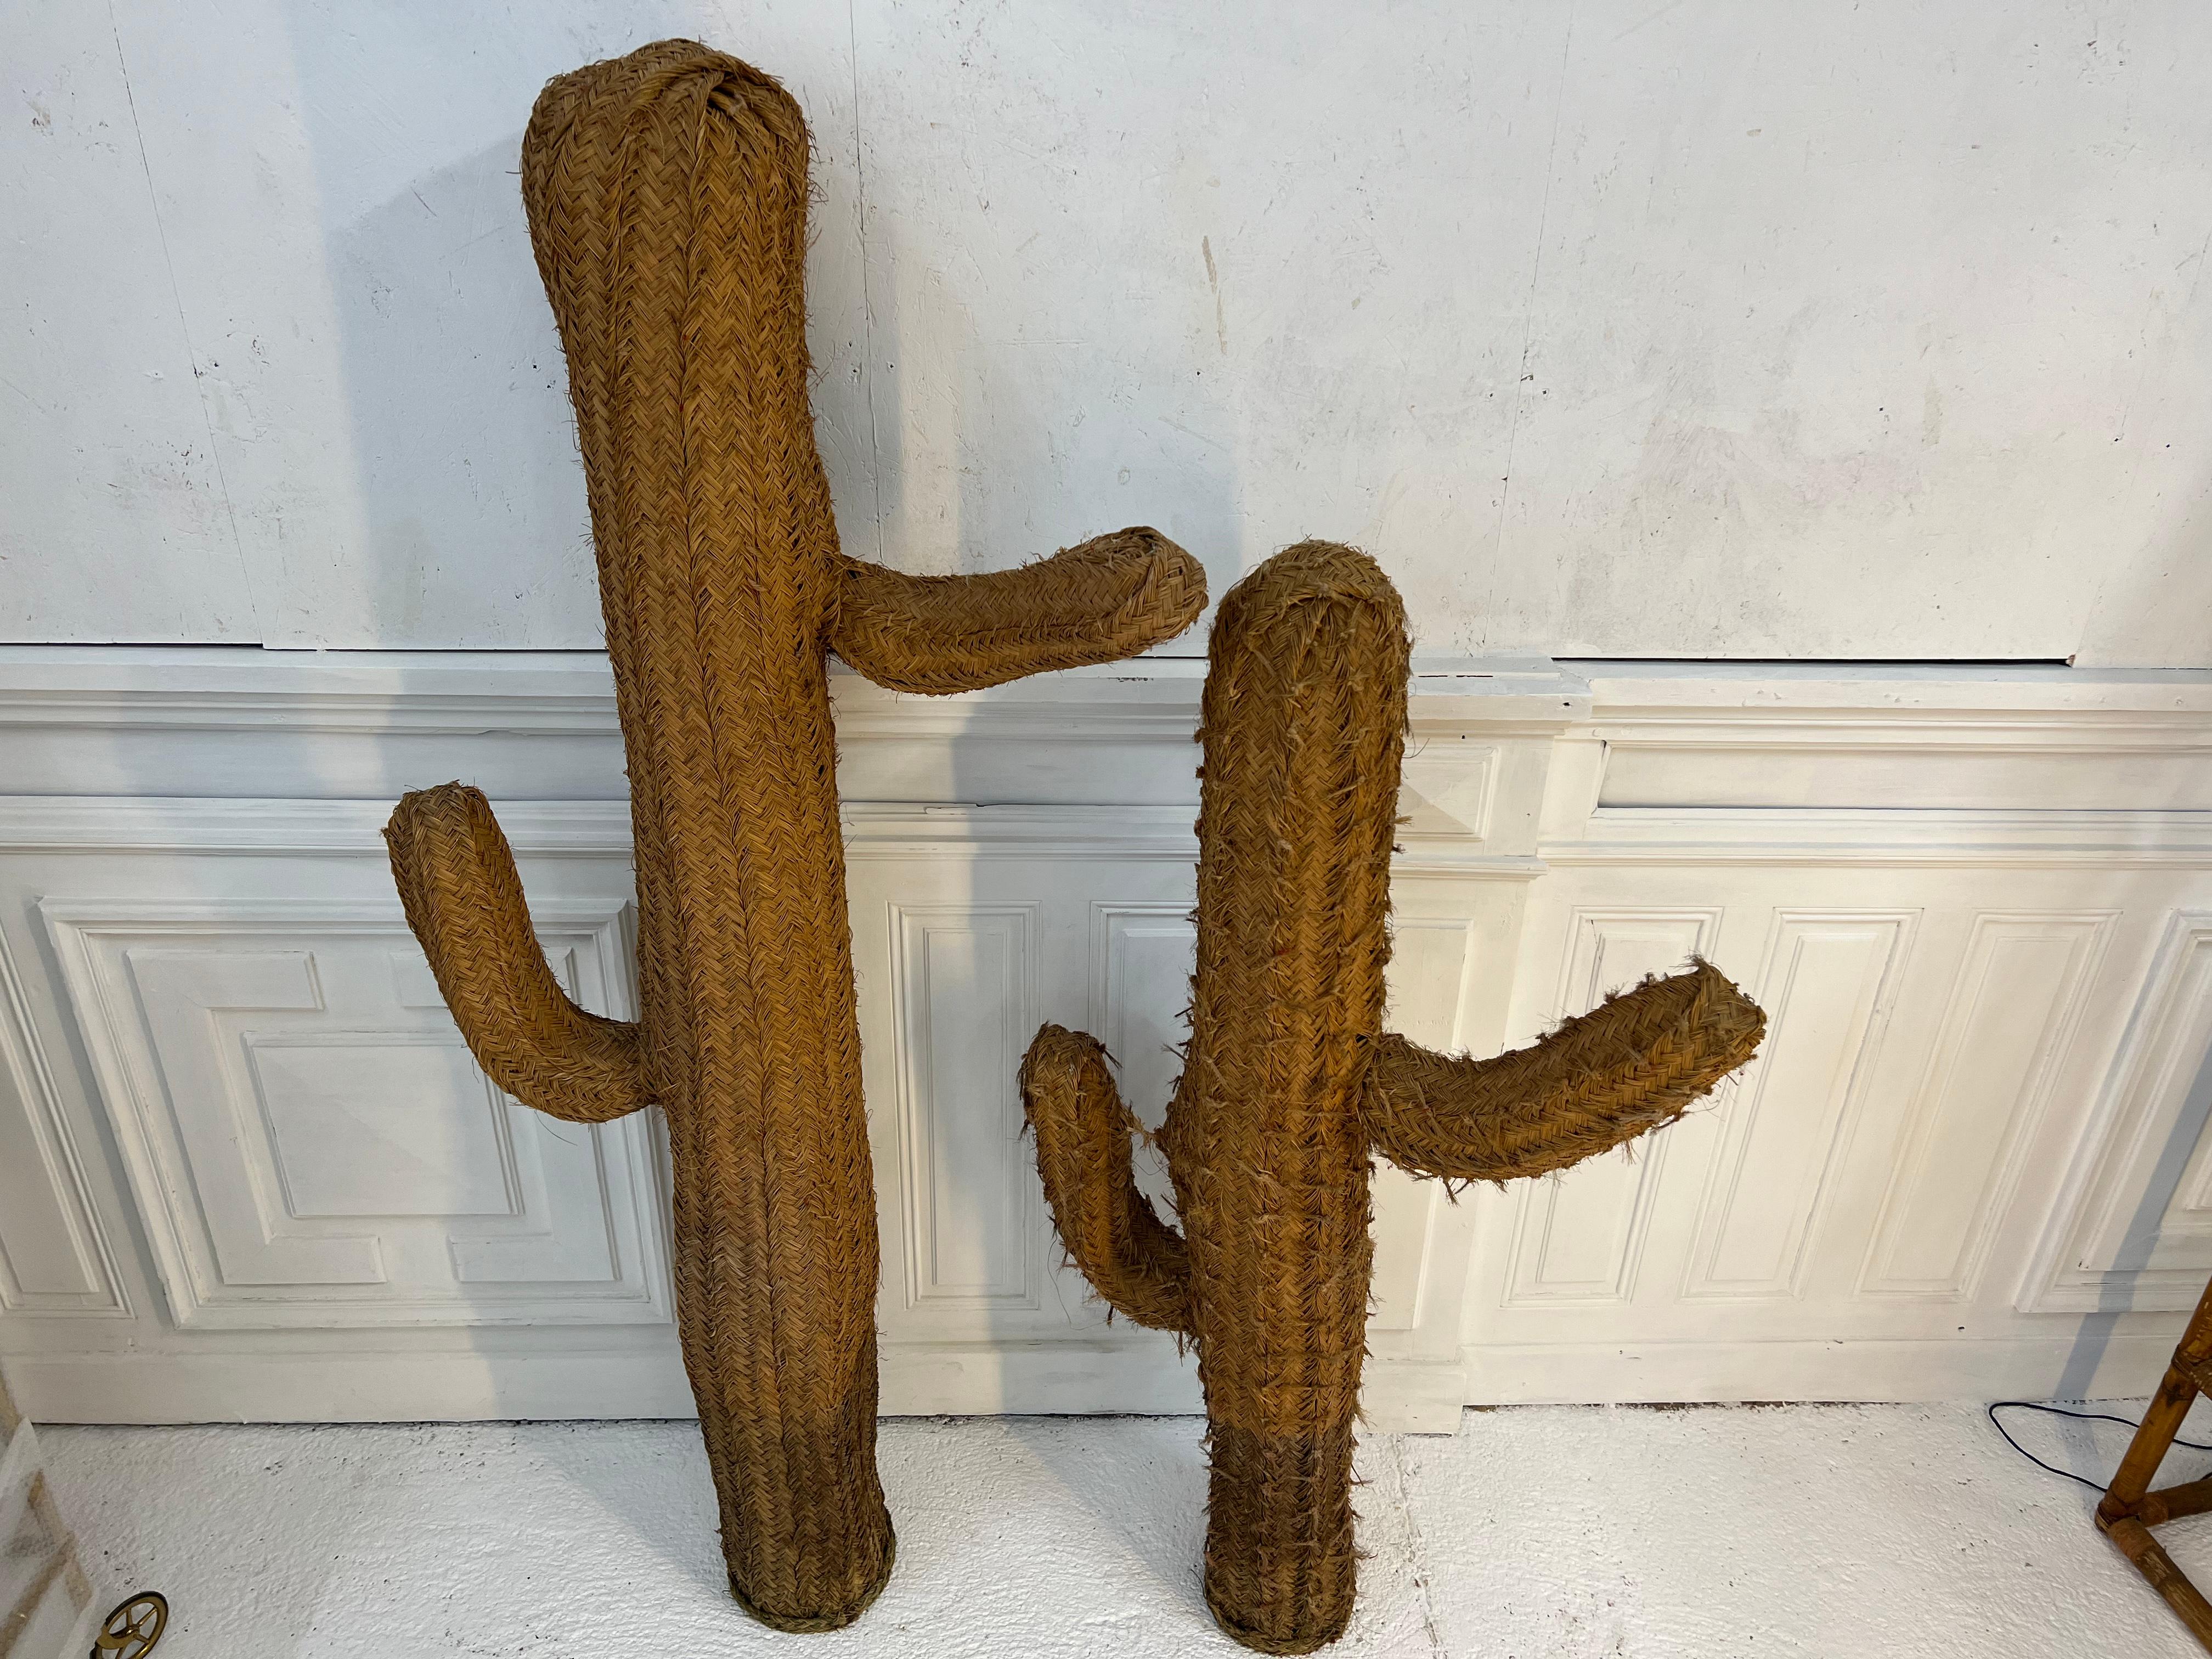 grand cactus en osier des années 70
le grand mesure 180 cm et le petit 150 cm
l'ensemble est prévu pour décorer vos jardins intérieurs ou extérieurs